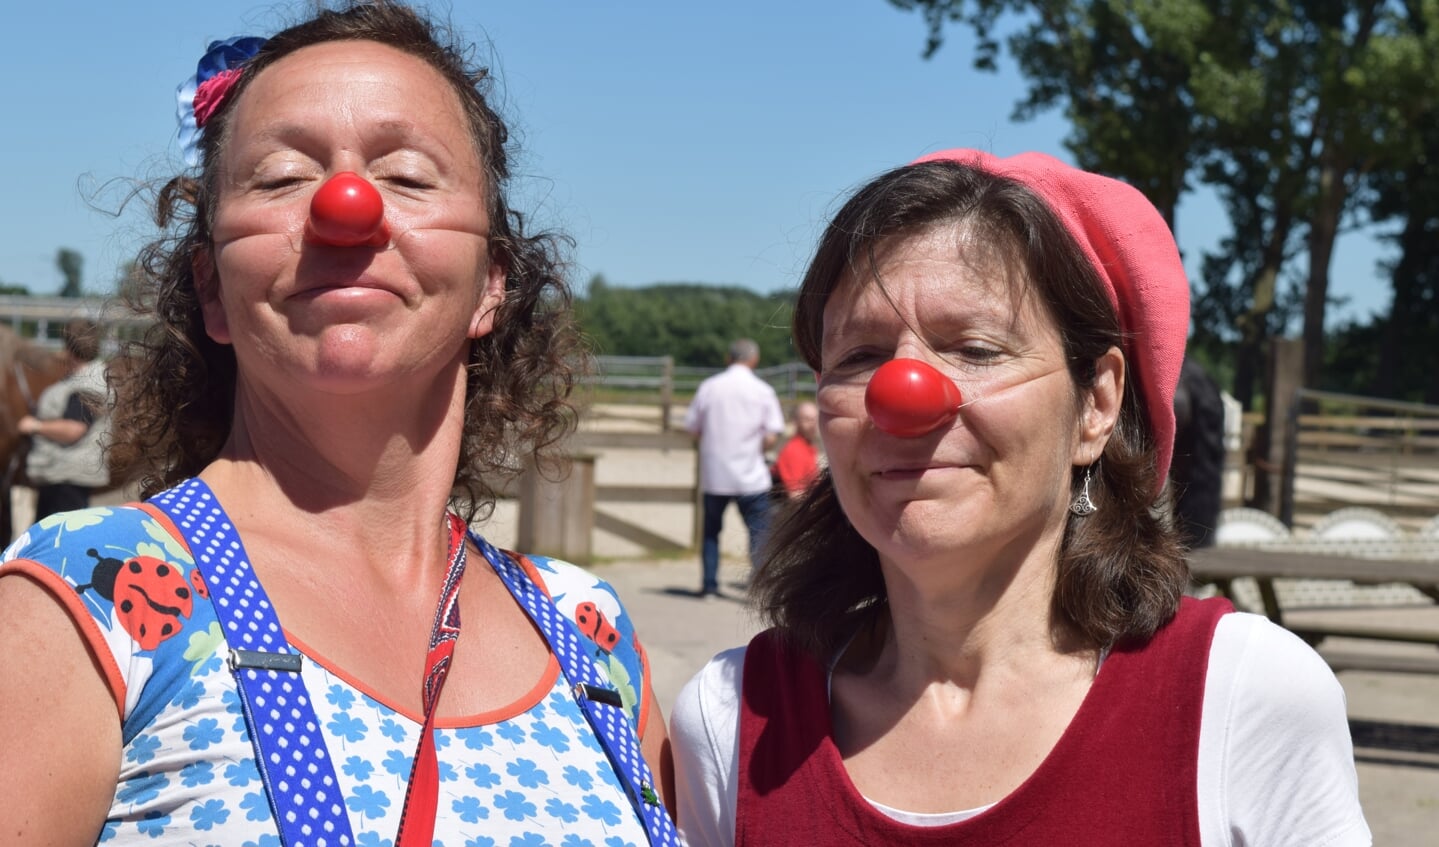 Clowns brengen nog meer gezelligheid tijdens het jubileumfeest.